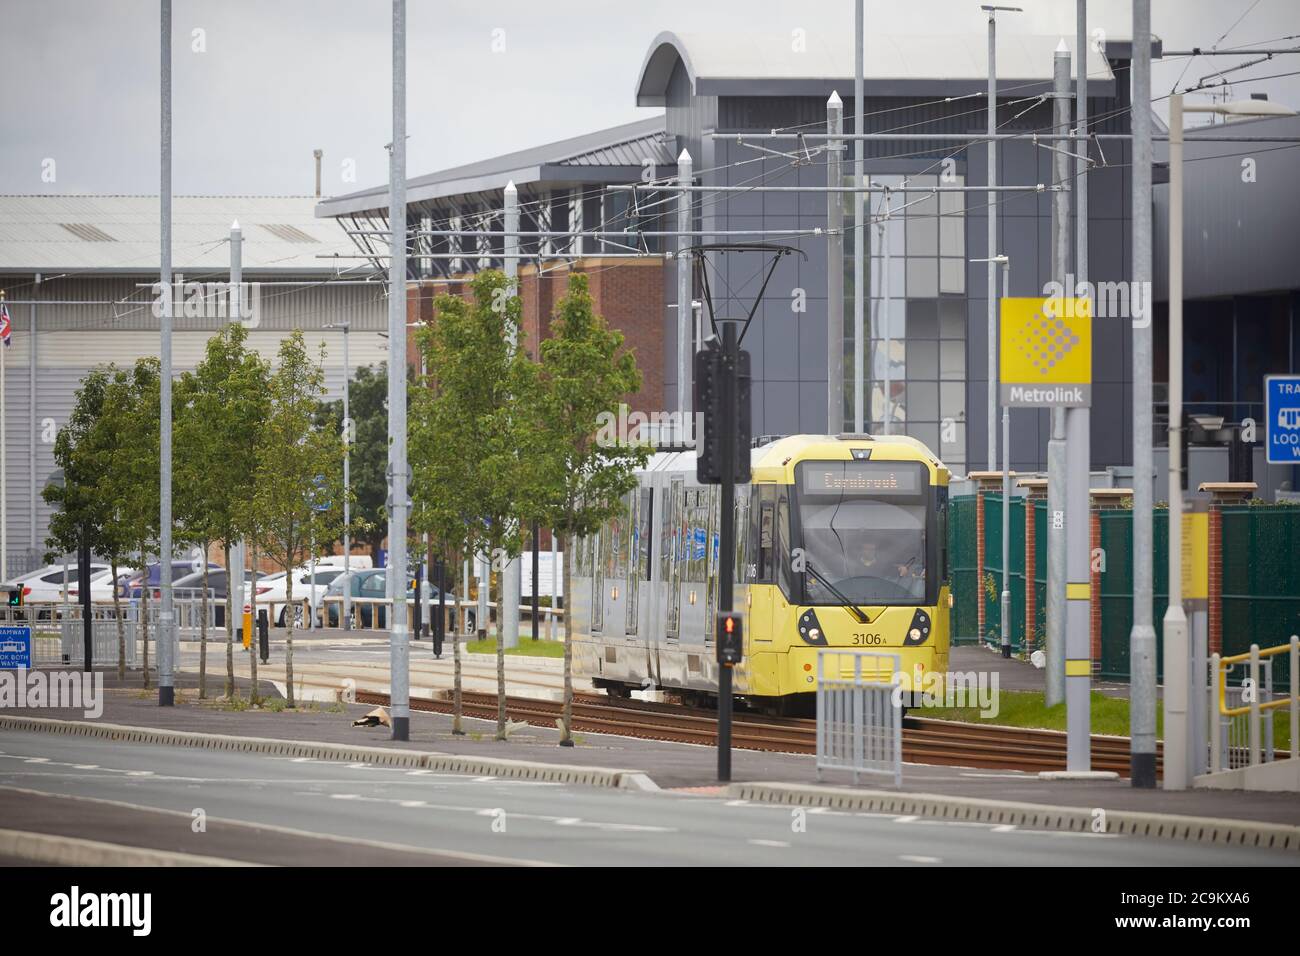 Scena moderna un tram M5000 METROLNK Bombardier che opera attraverso la zona industriale di Trafford Park Greater Manchester Foto Stock